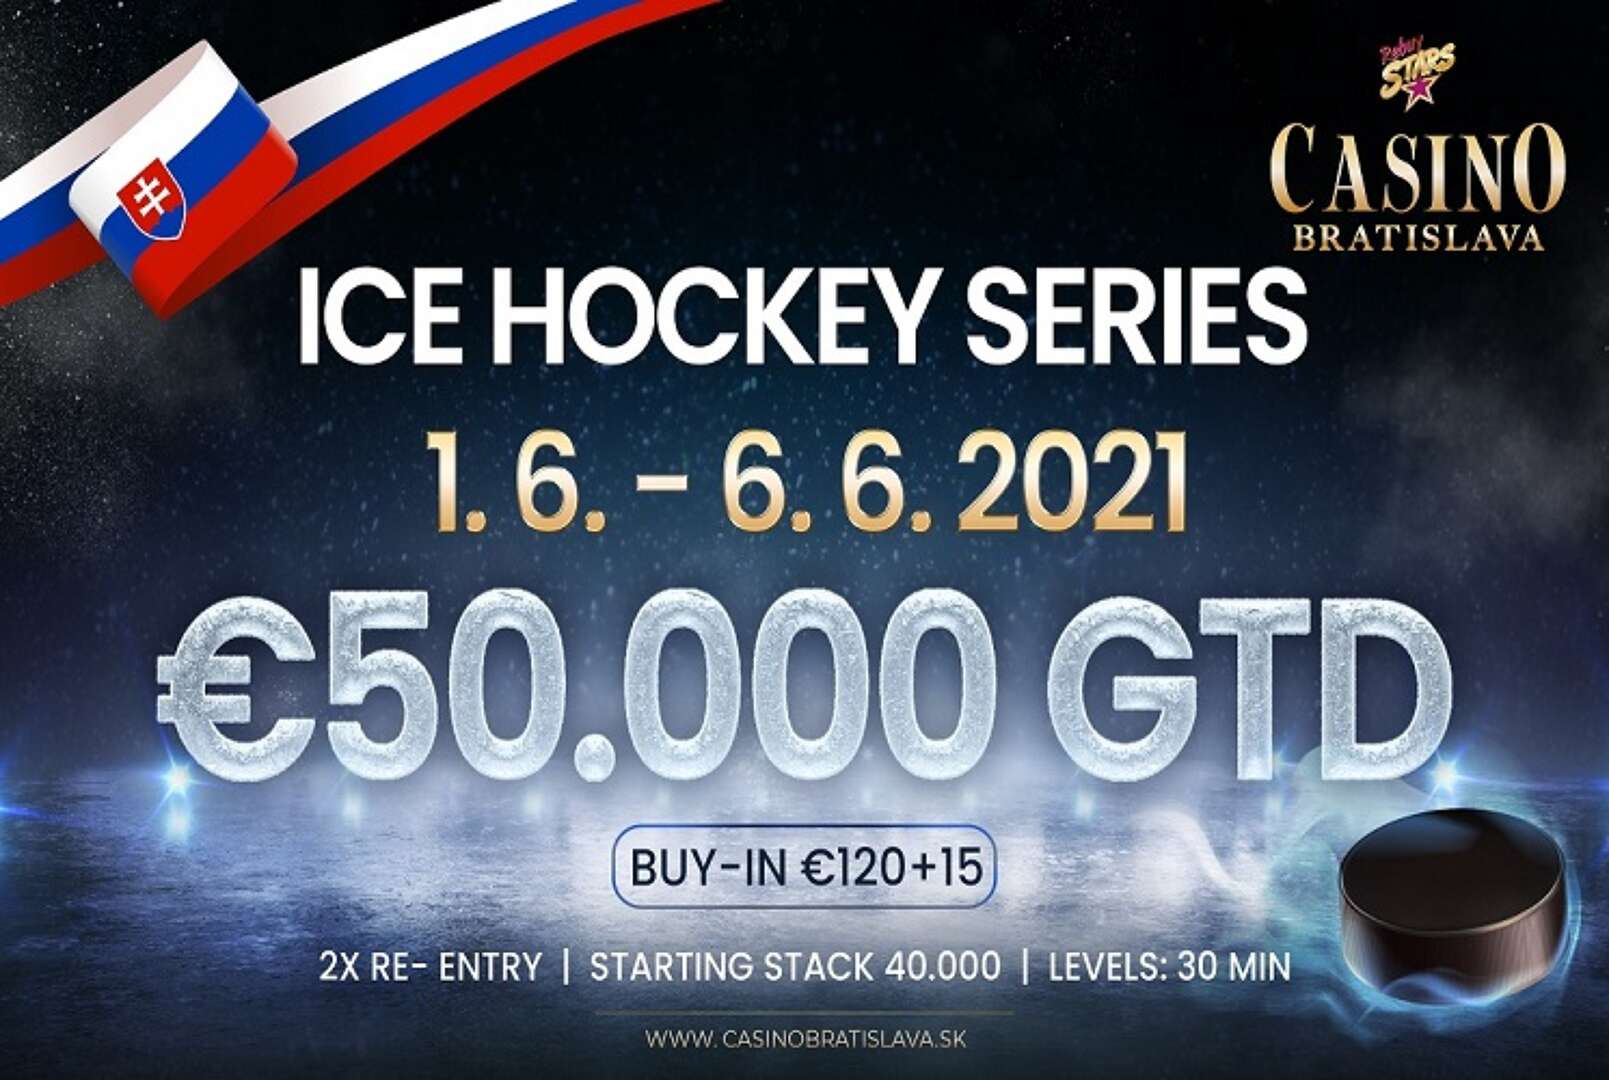 Štartuje Ice Hockey Series Main Event s 50 000 € GTD!